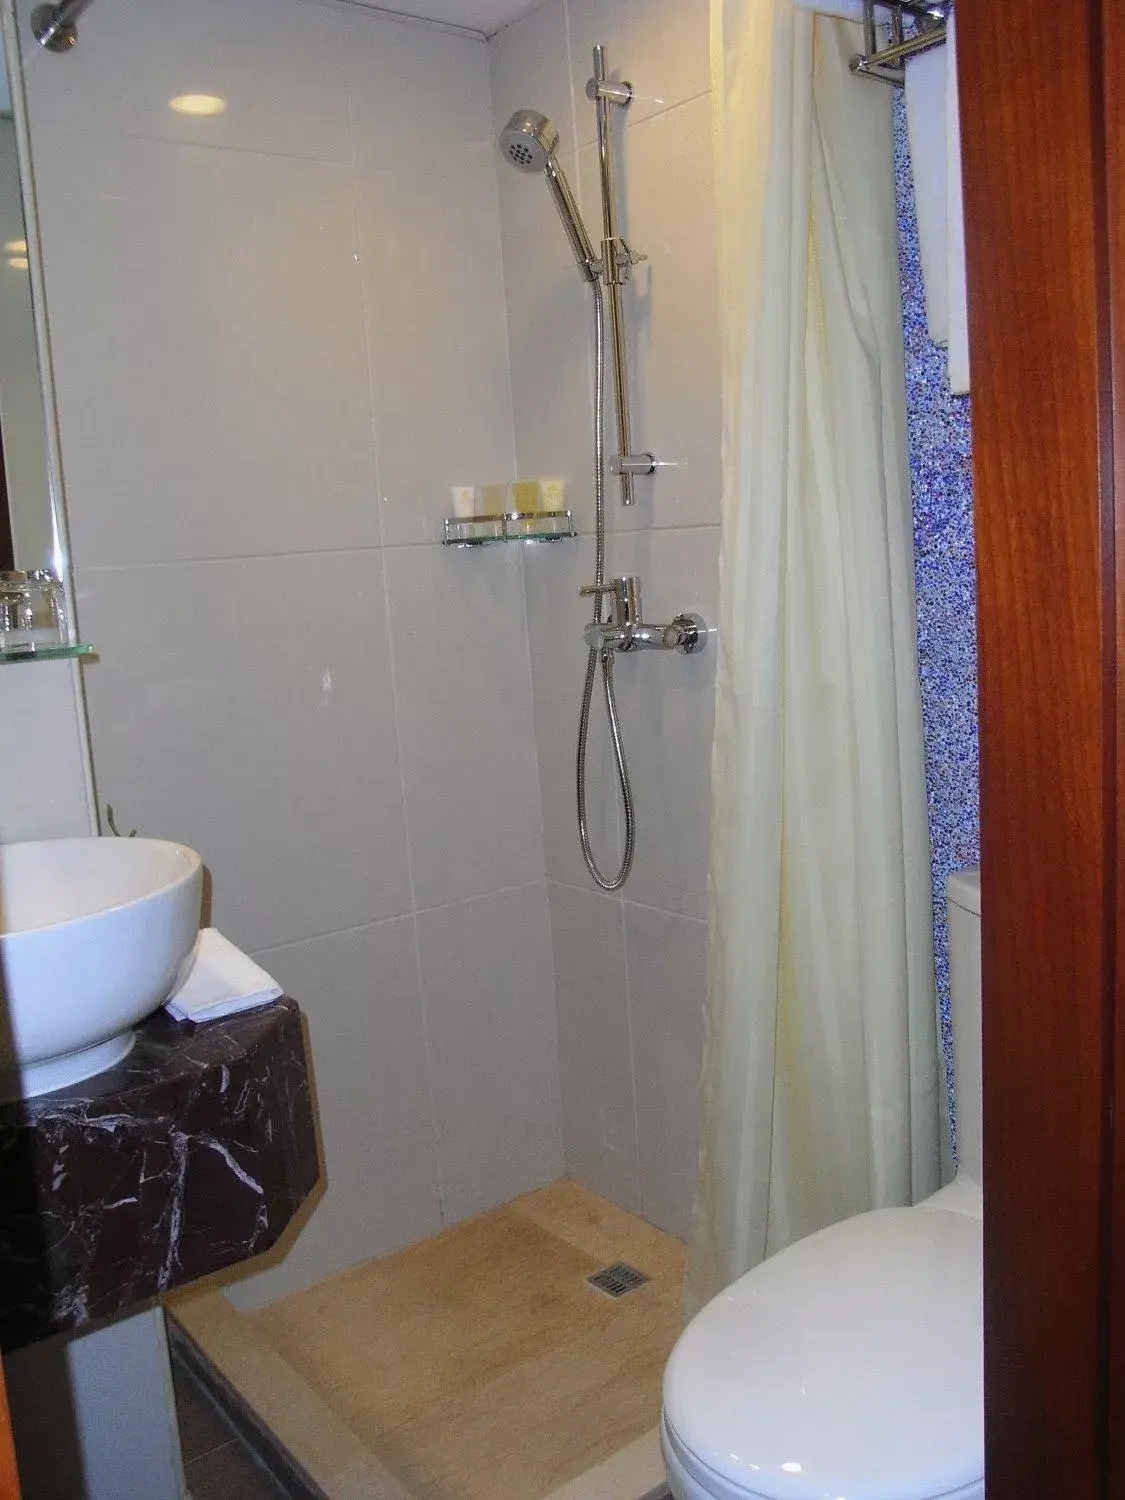 Bathroom in Oriental Lander Hotel